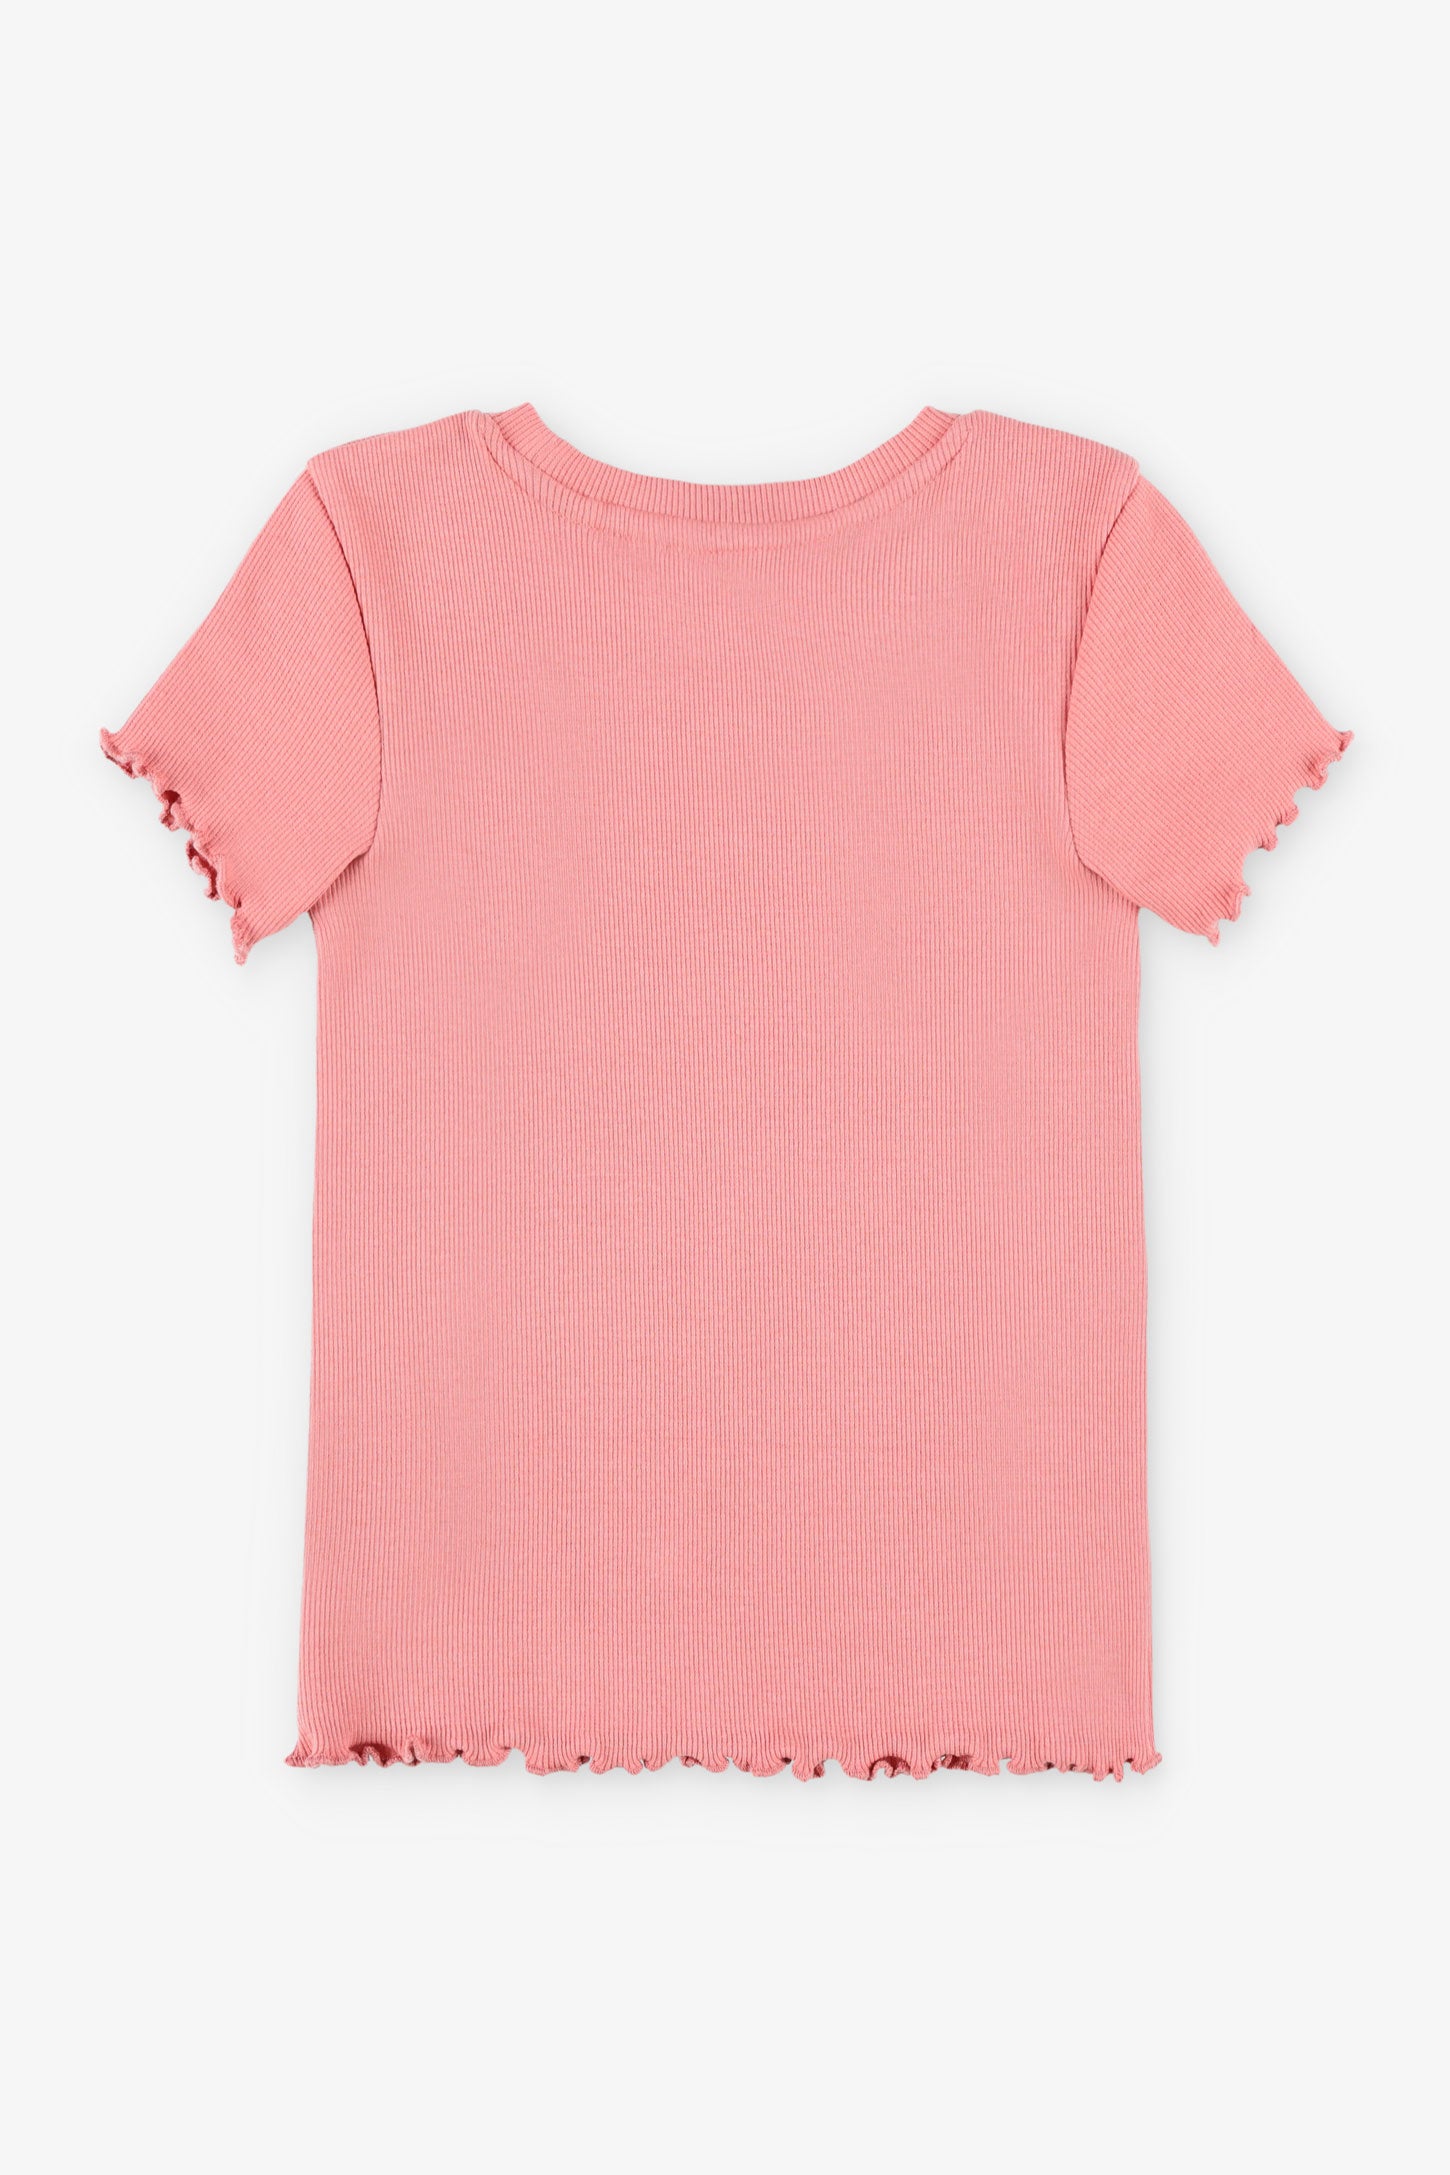 T-shirt côtelé finitions laitue - Enfant fille && ROSE